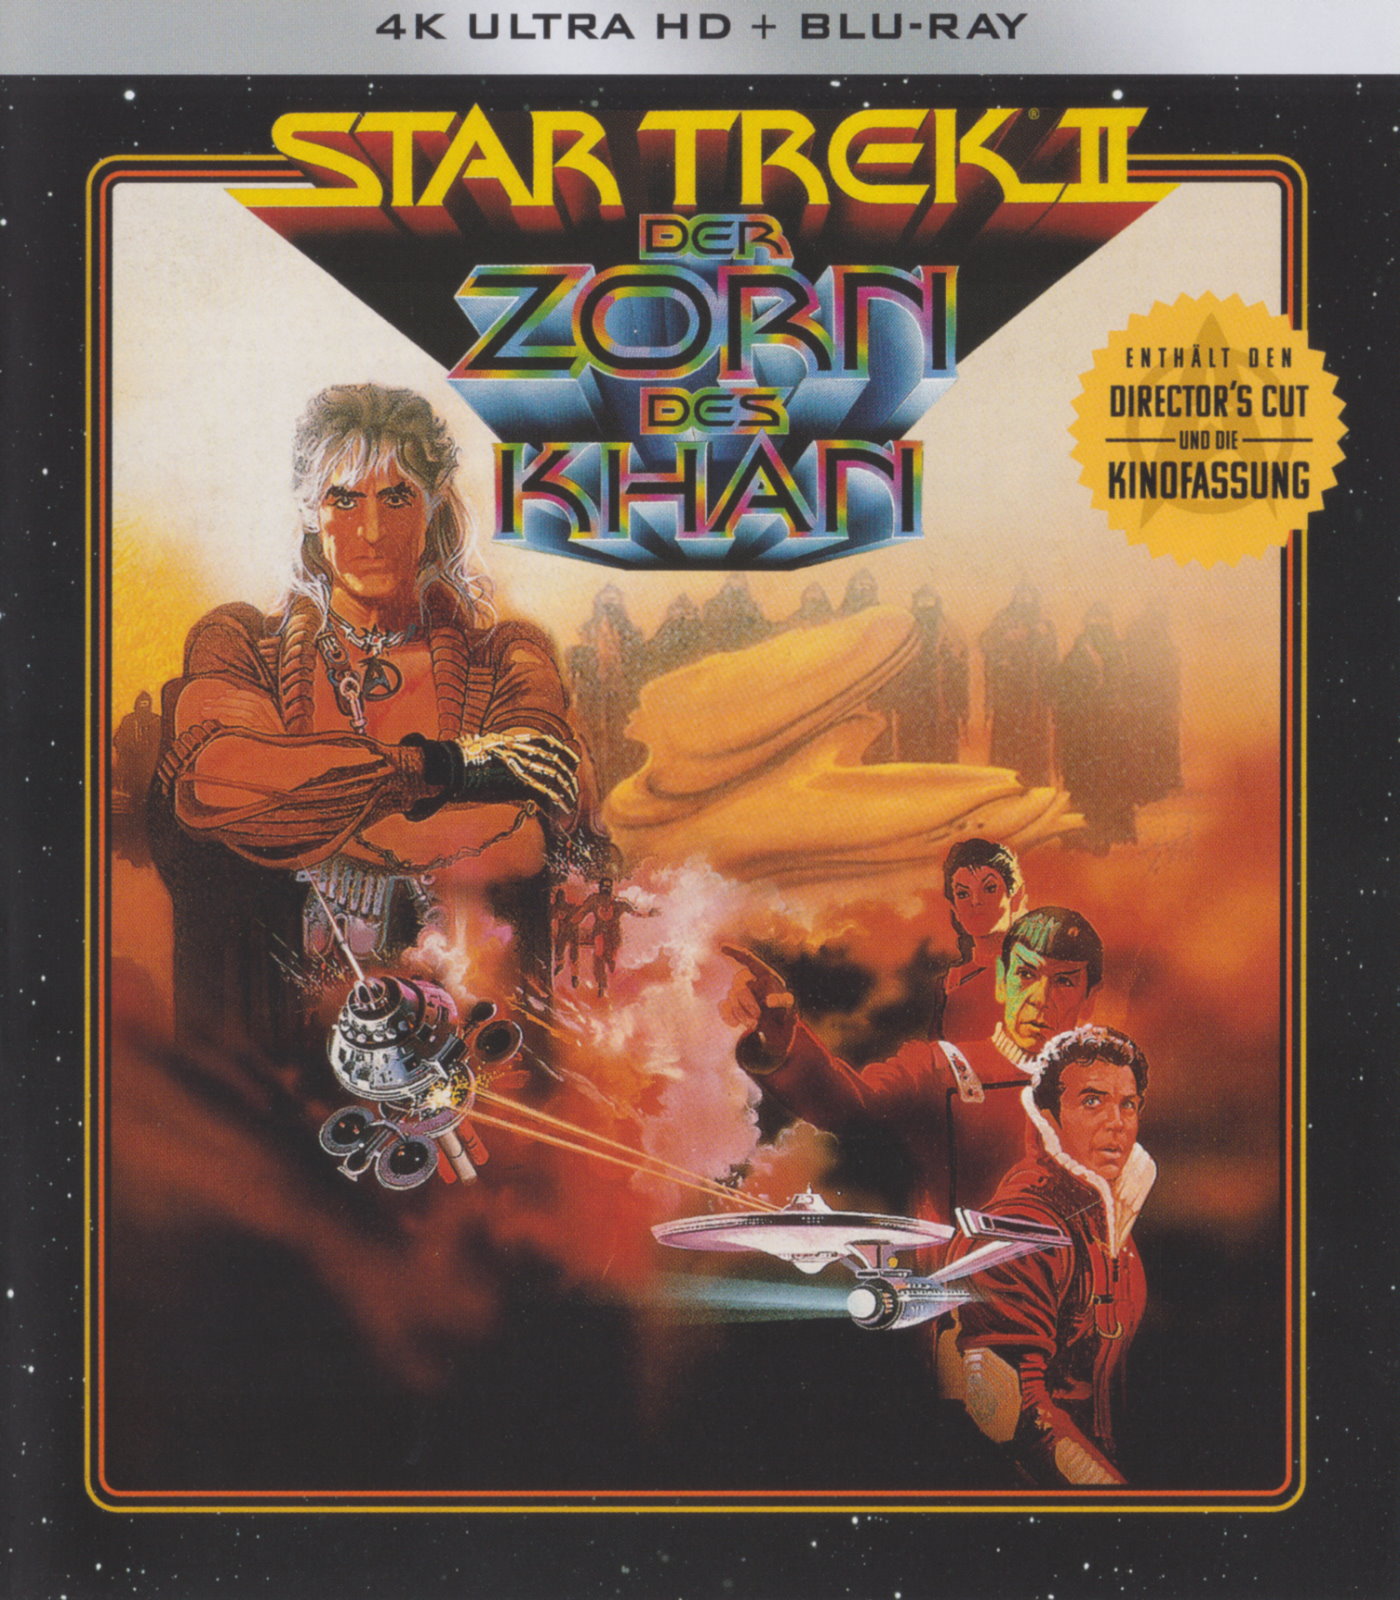 Cover - Star Trek II - Der Zorn Des Khan.jpg